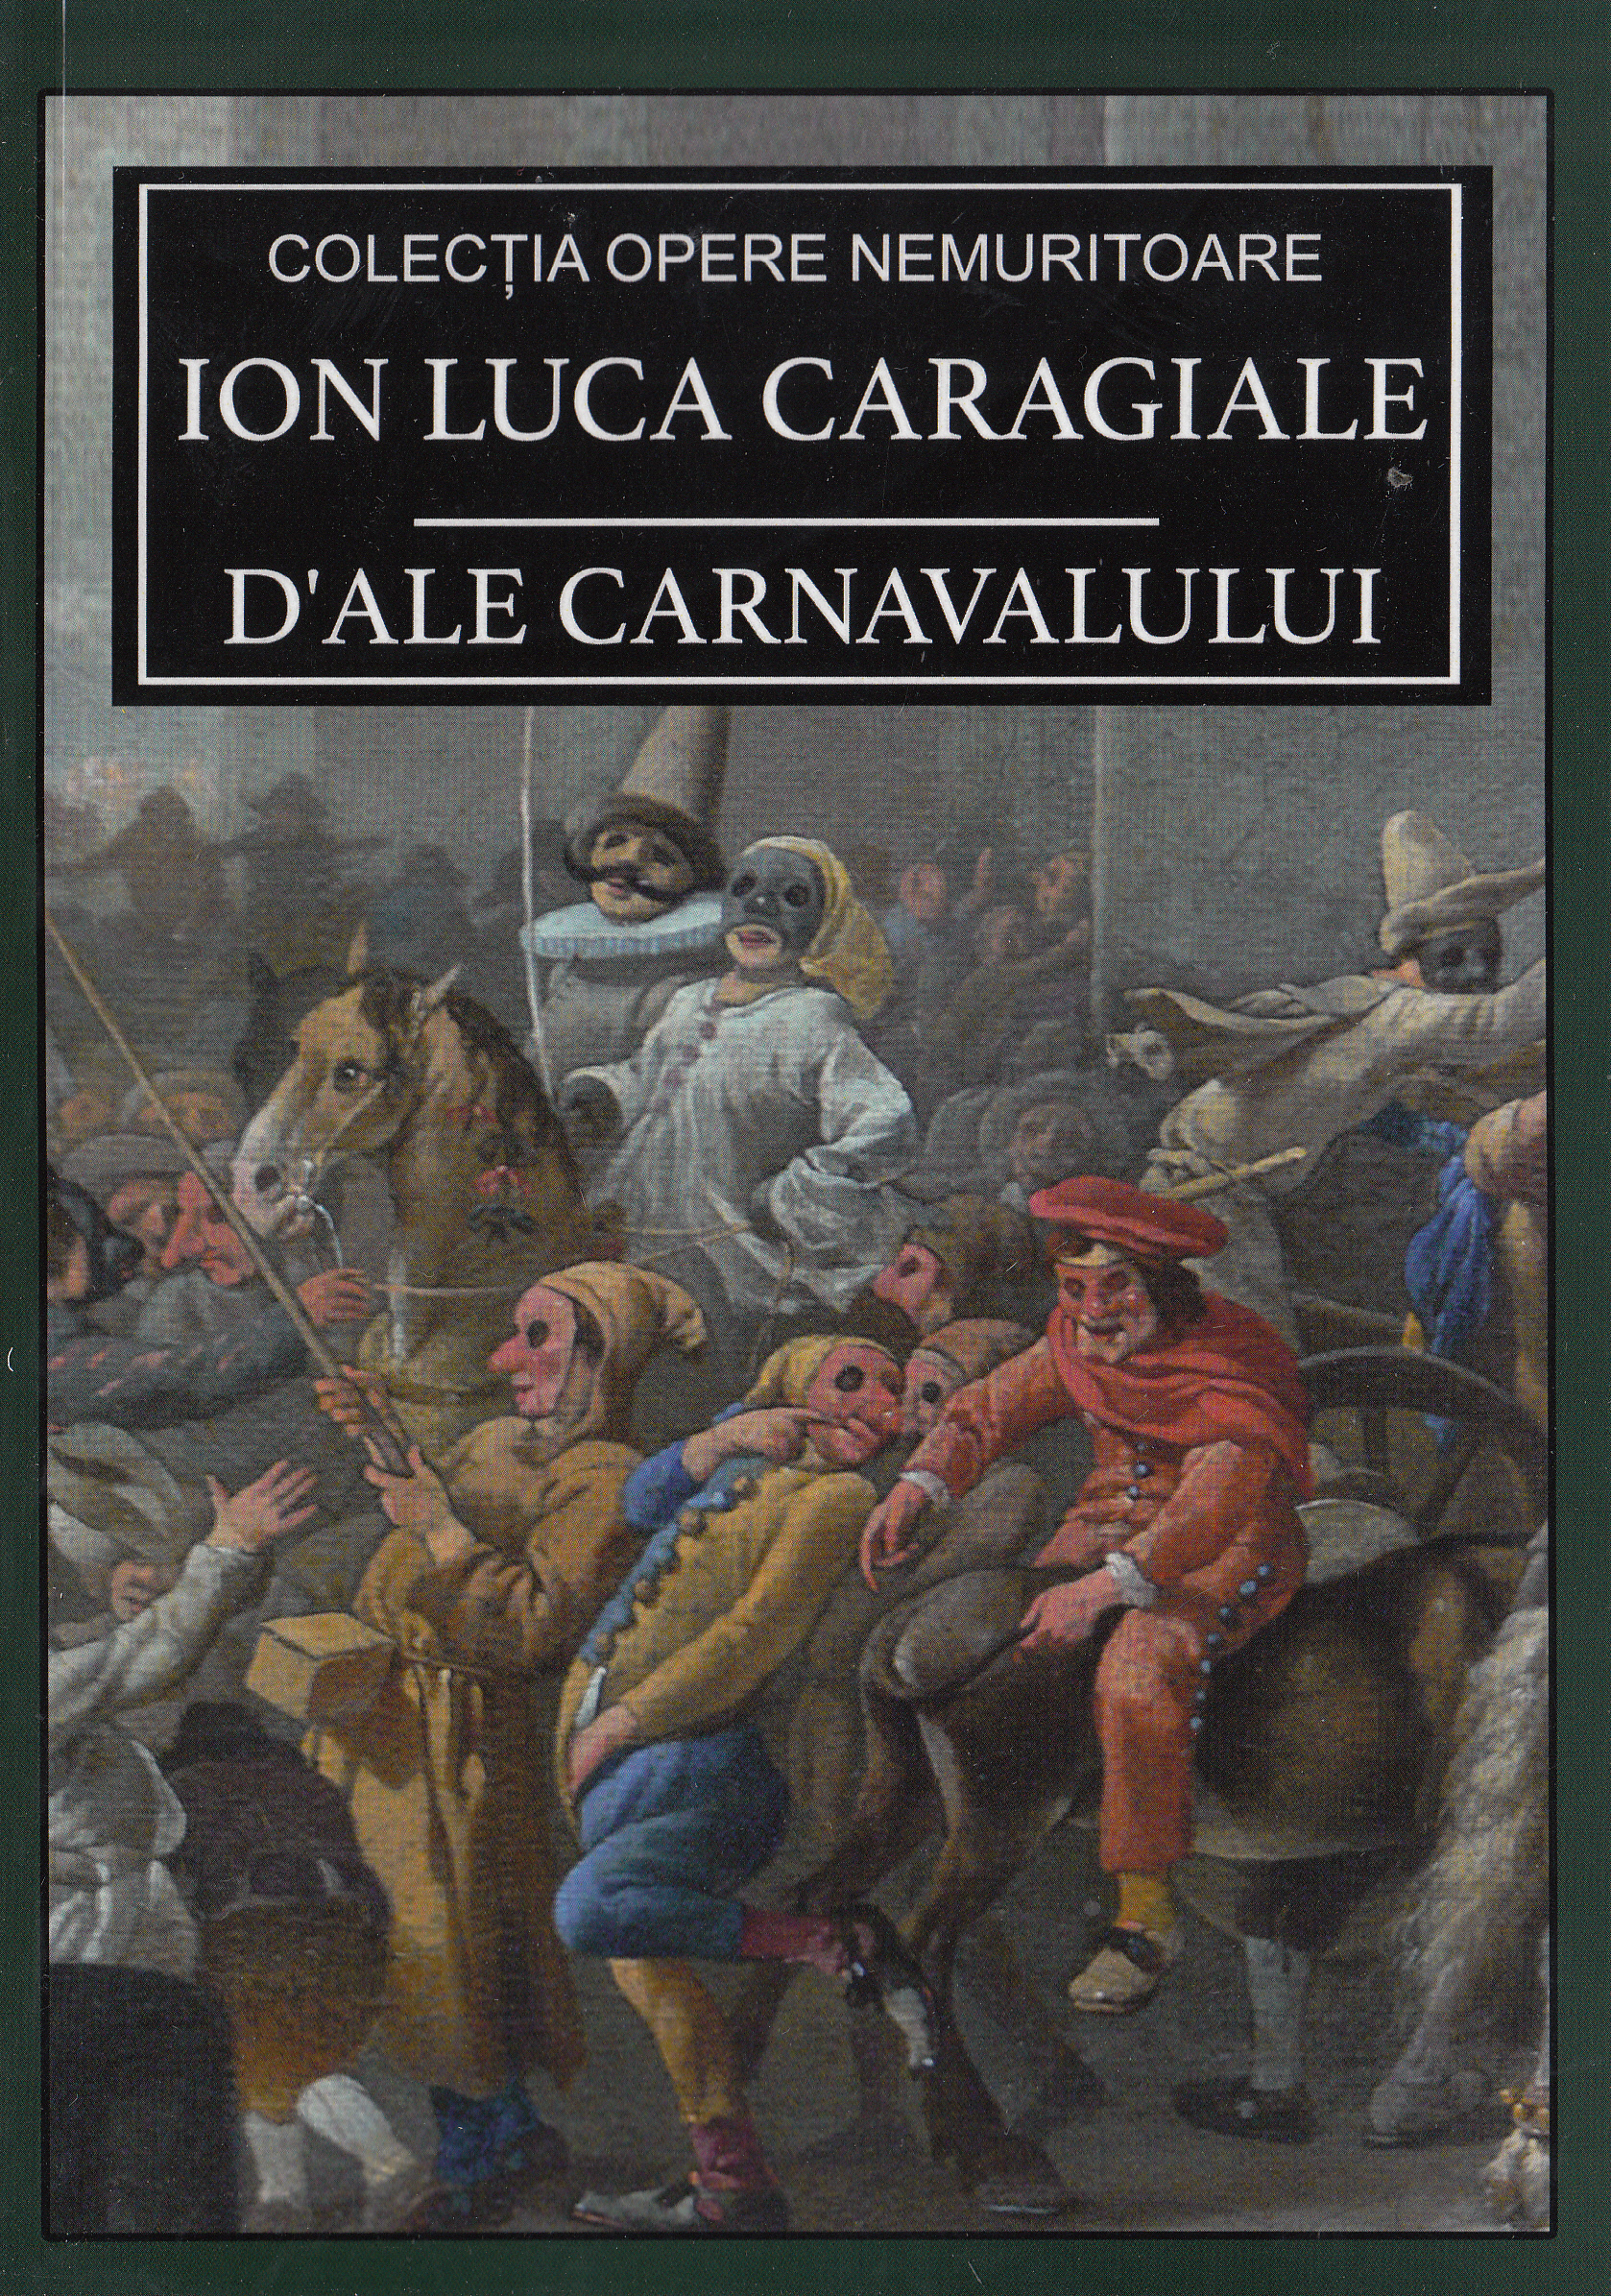 D'ale carnavalului - Ion Luca Caragiale